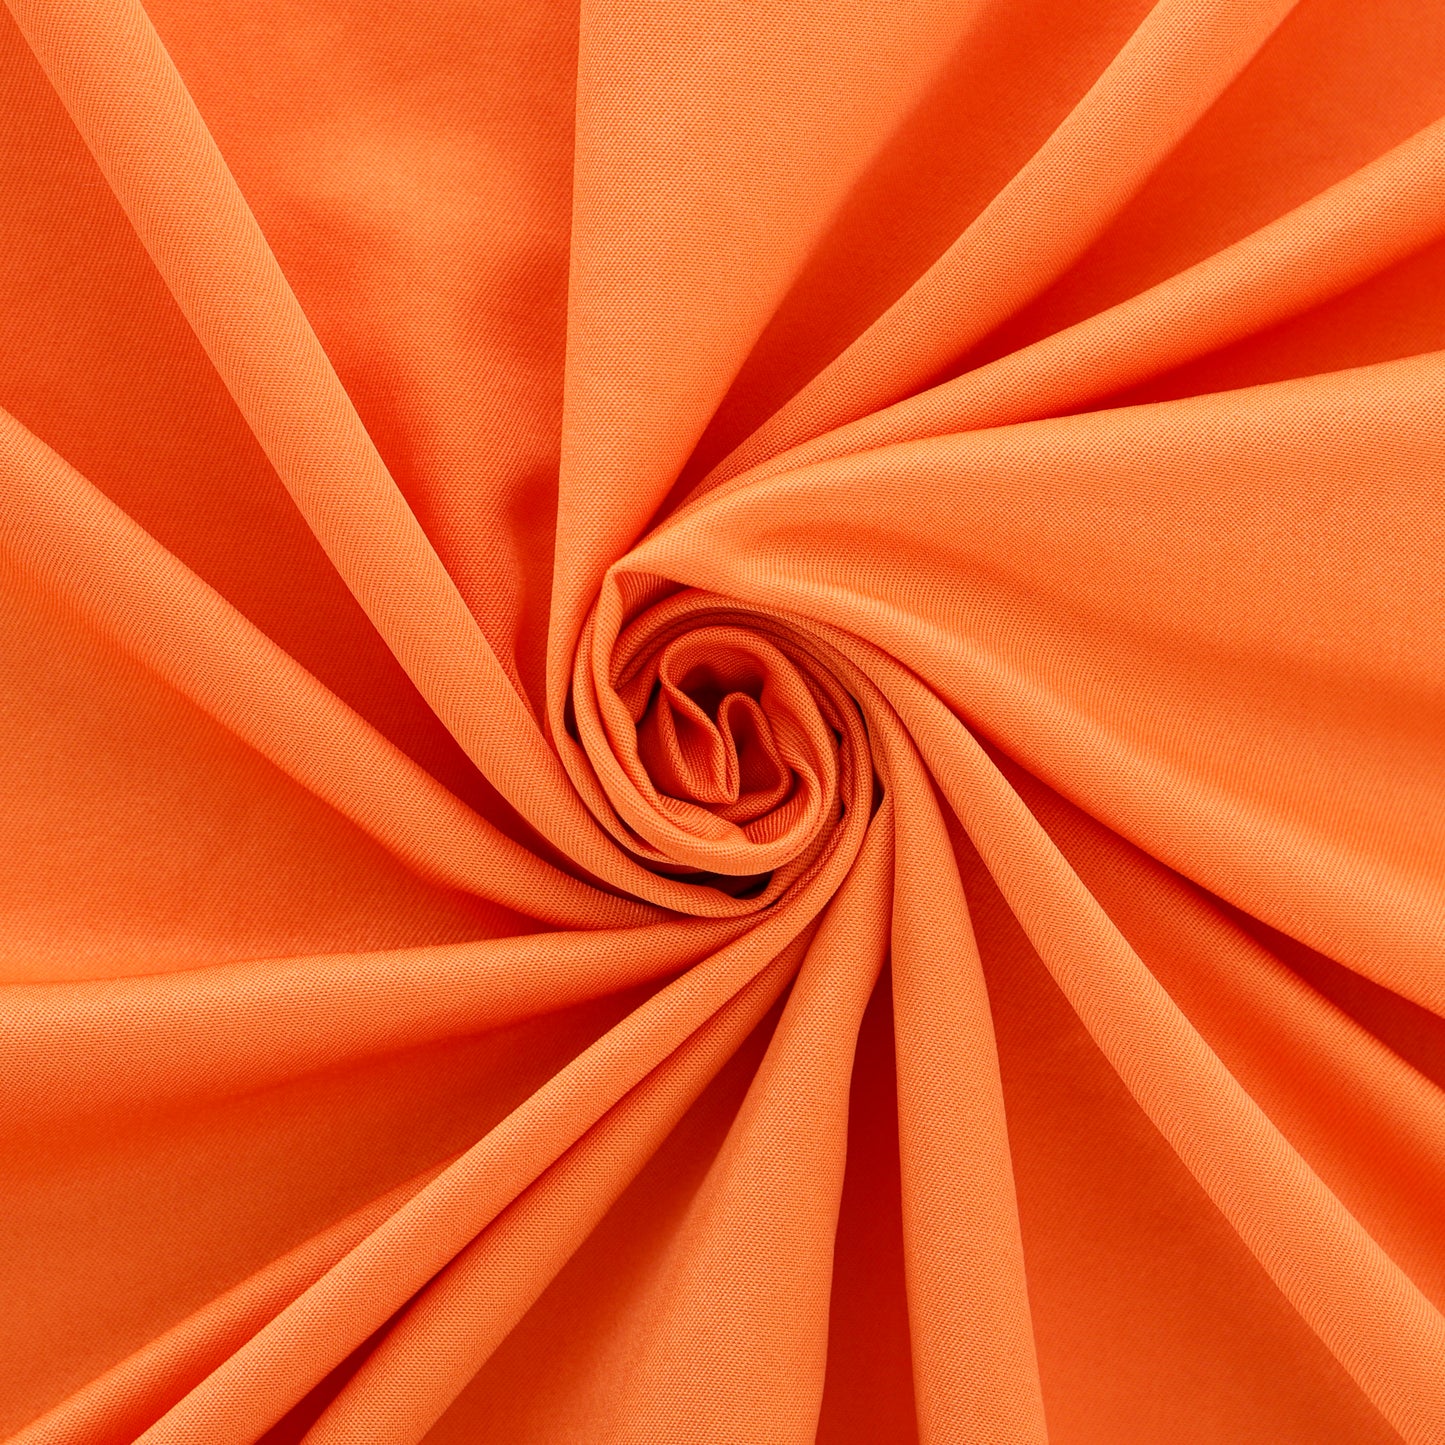 Duvet cover luxury-orange.